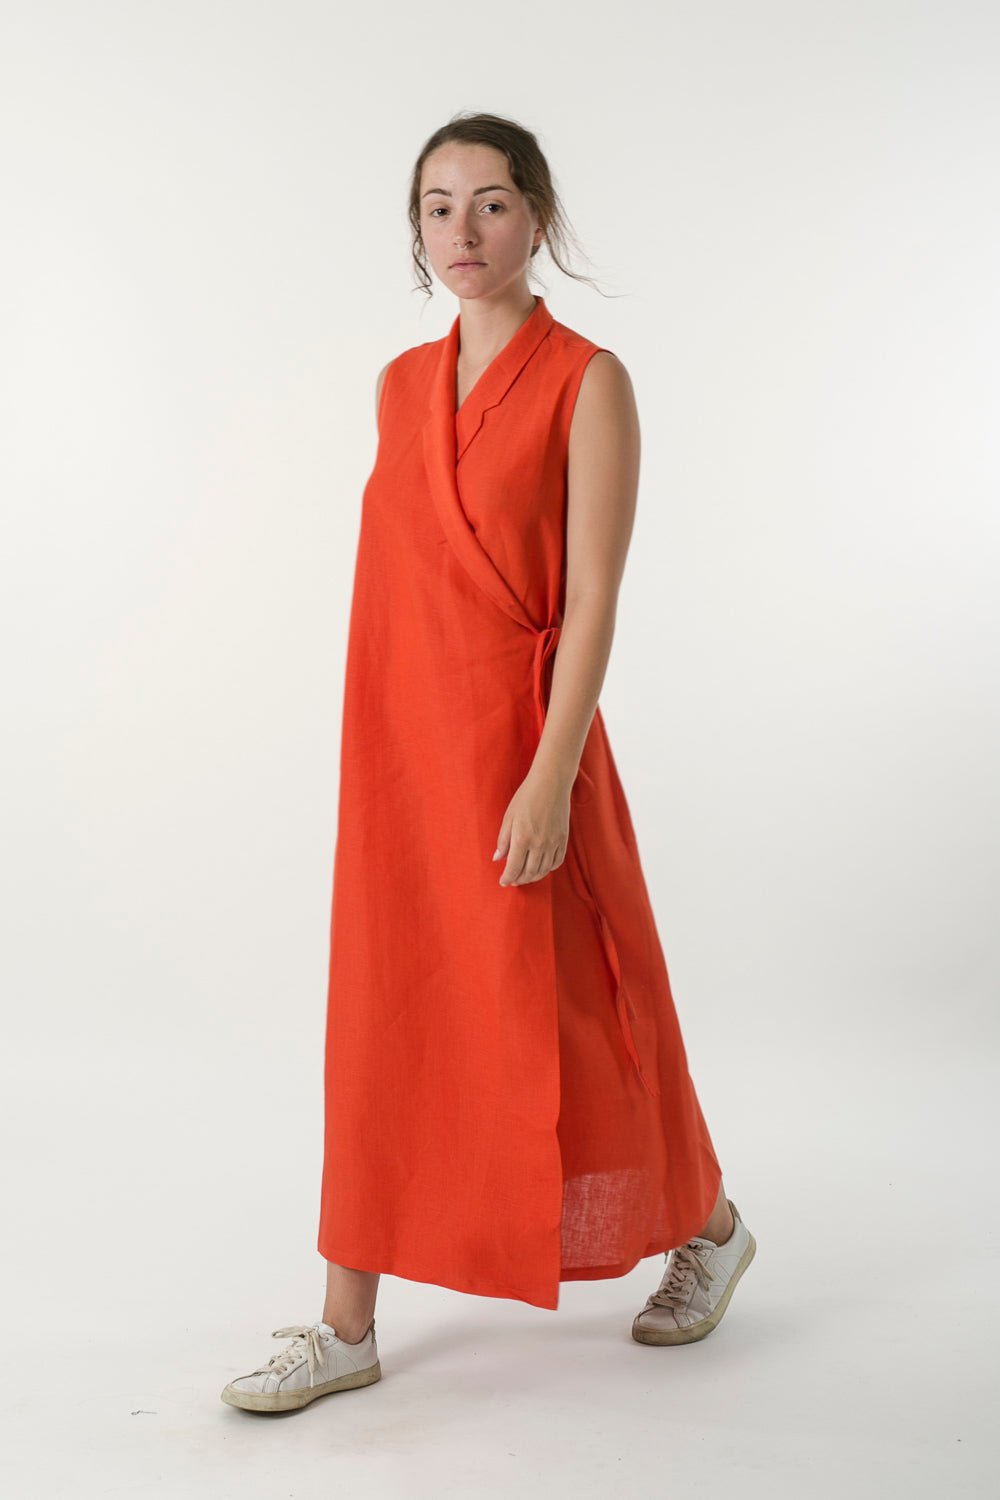 Hemp Linen Sleeveless Wrap Dress - Ensemble Studios